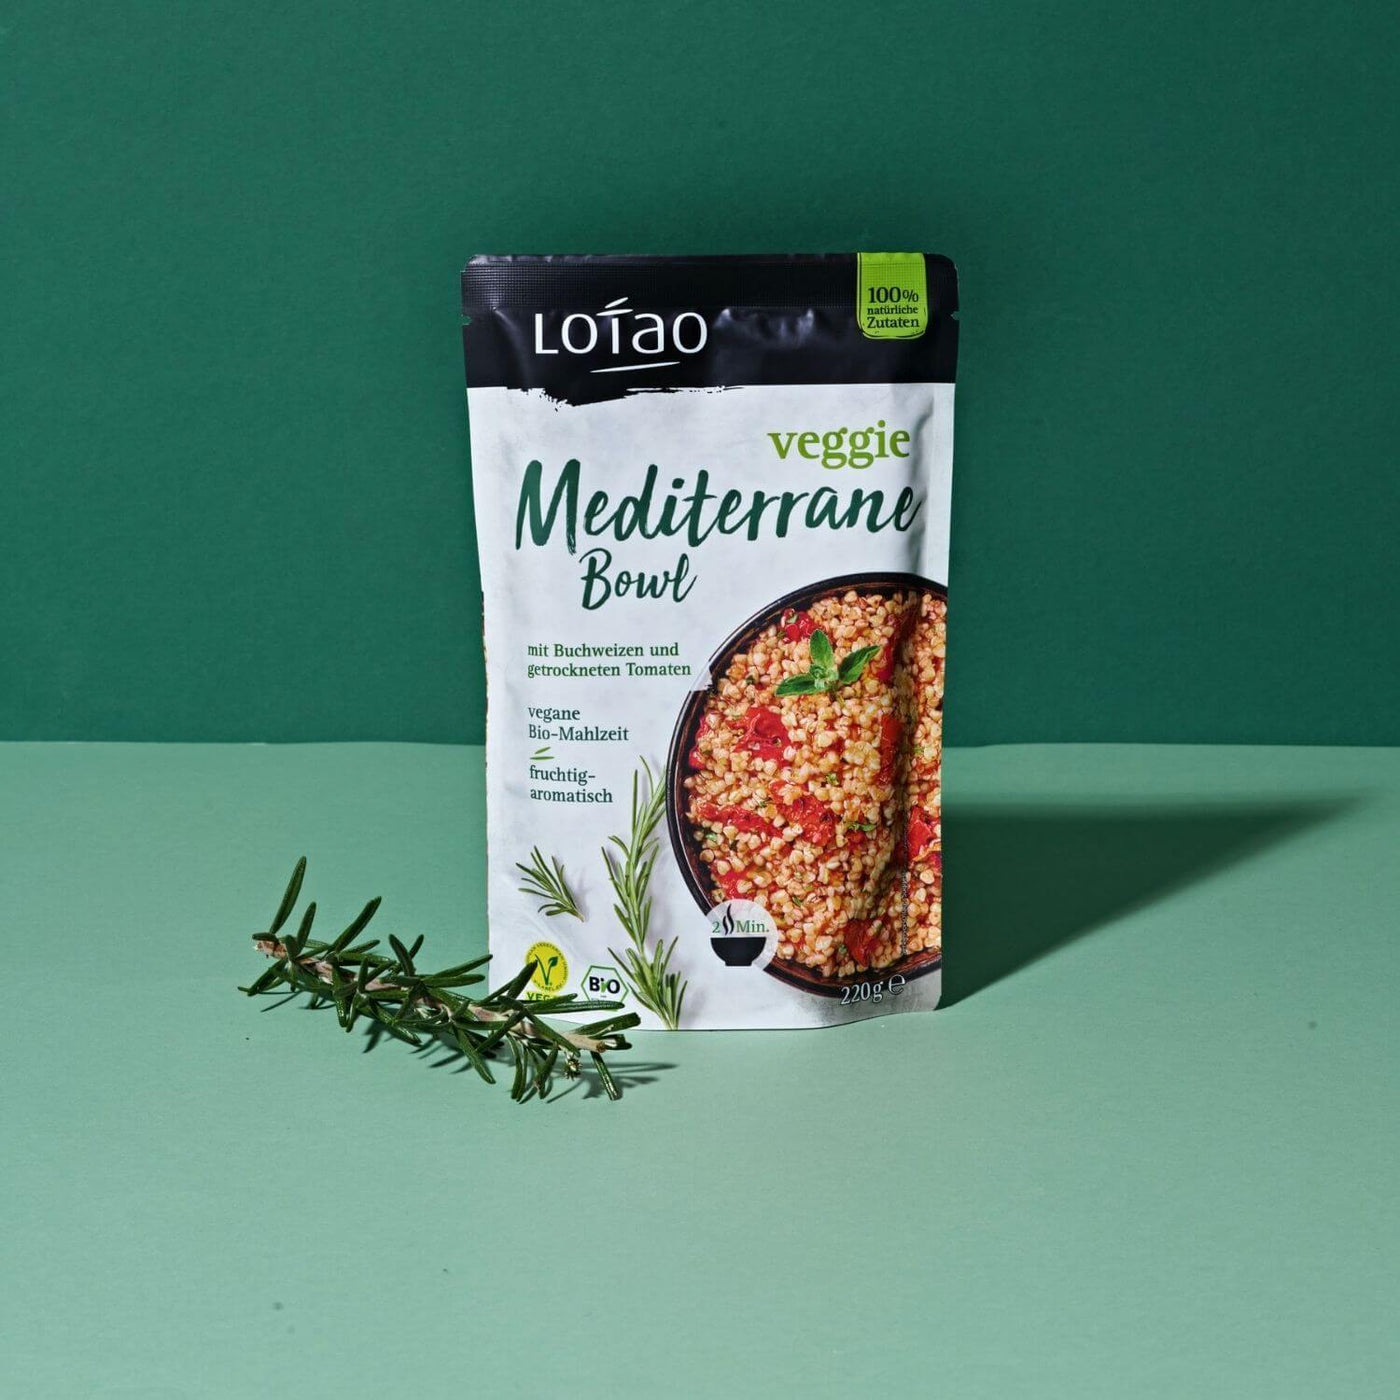 Grüner Hintergrund mit 220g Packung der Lotao Veggie Mediterranen Bowl, einem bio-veganen Fertiggericht mit Buchweizen und getrockneten als vegane Bio-Mahlzeit